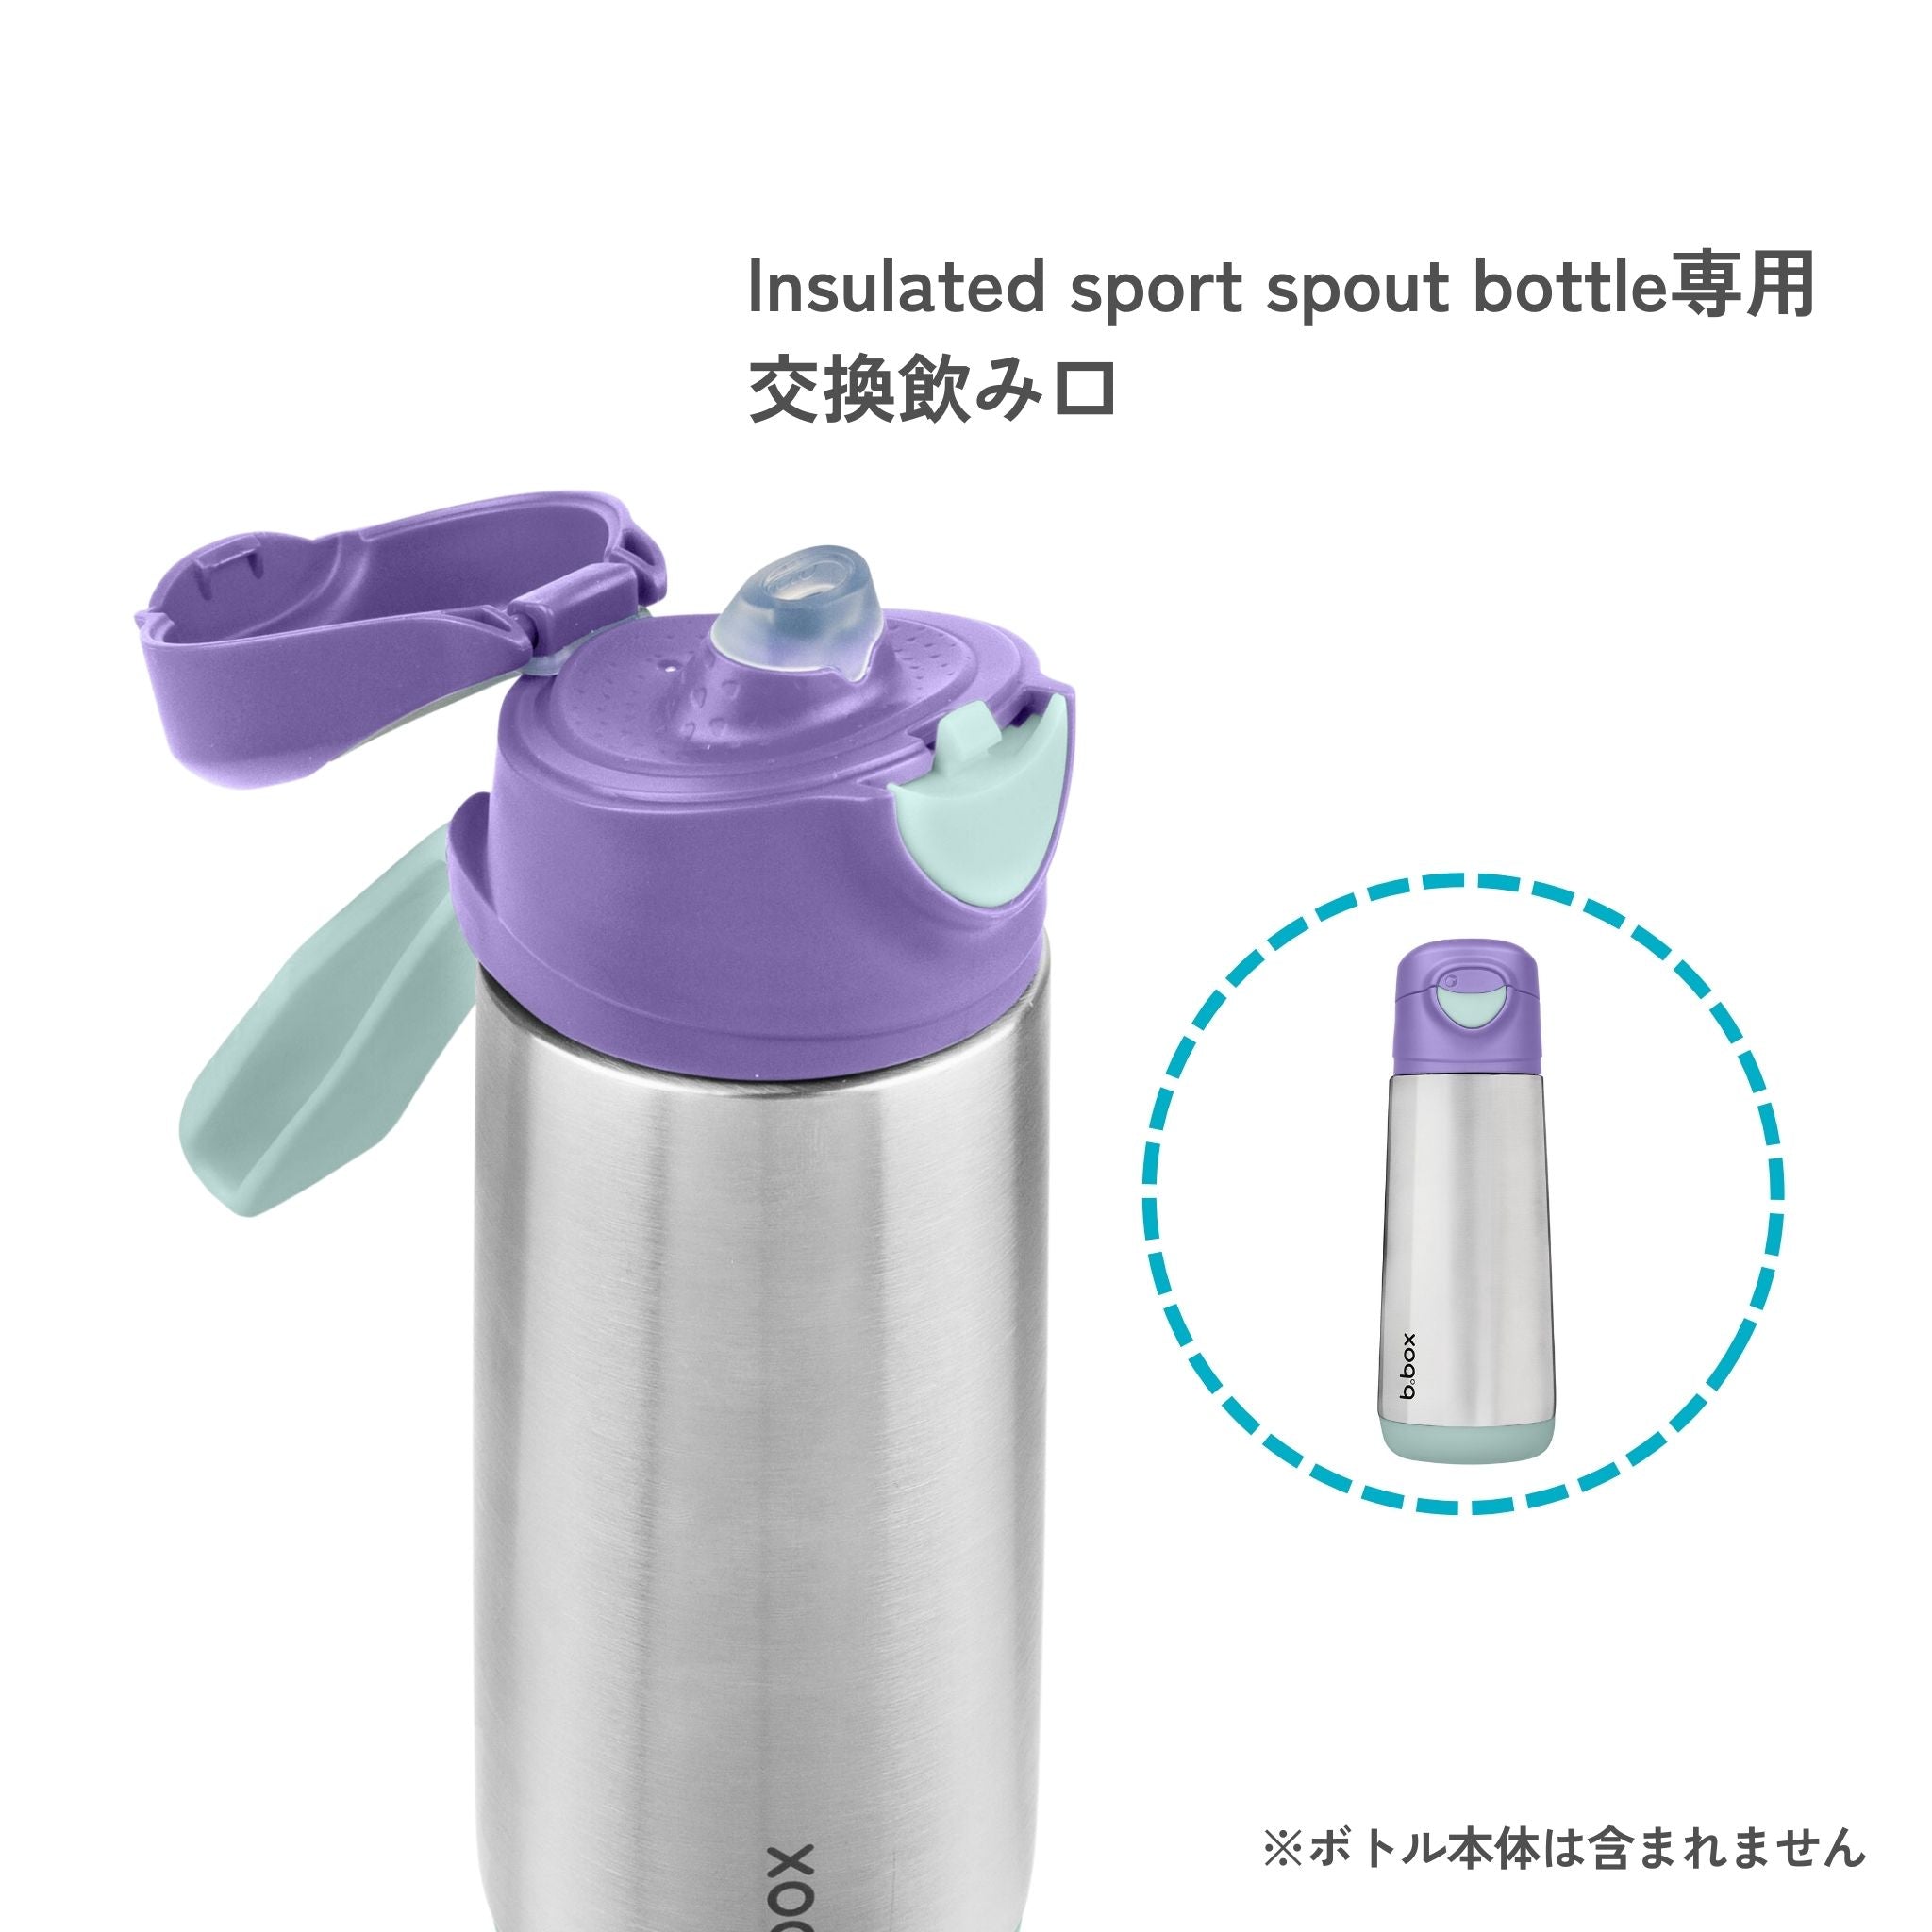 Insulated spout bottle 500ml ステンレススパウトボトル専用交換スパウト - 2個セット